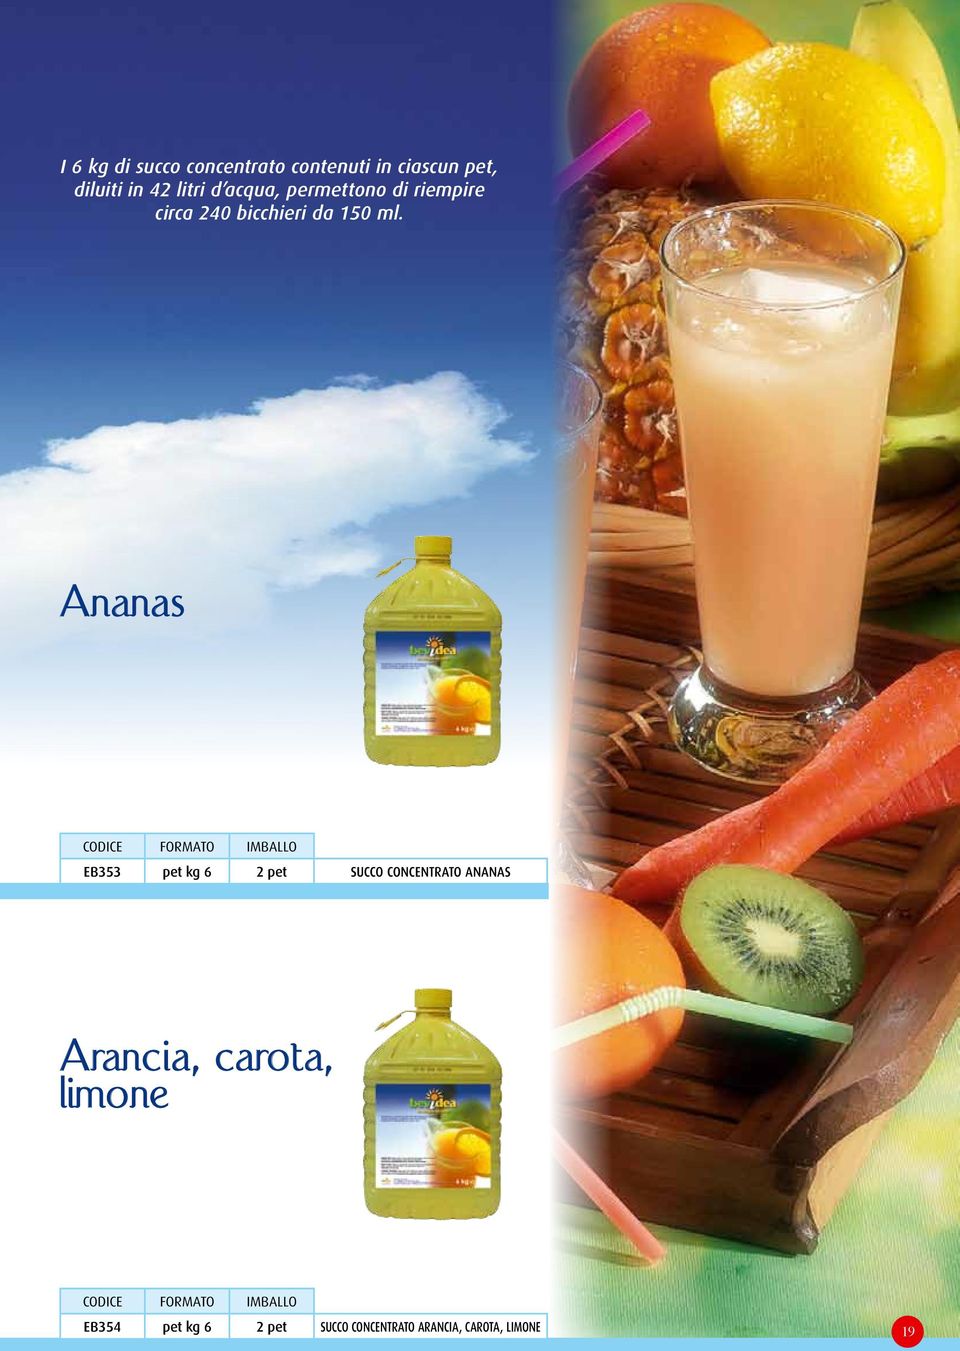 Ananas EB353 pet kg 6 2 pet SUCCO CONCENTRATO ANANAS Arancia, carota,